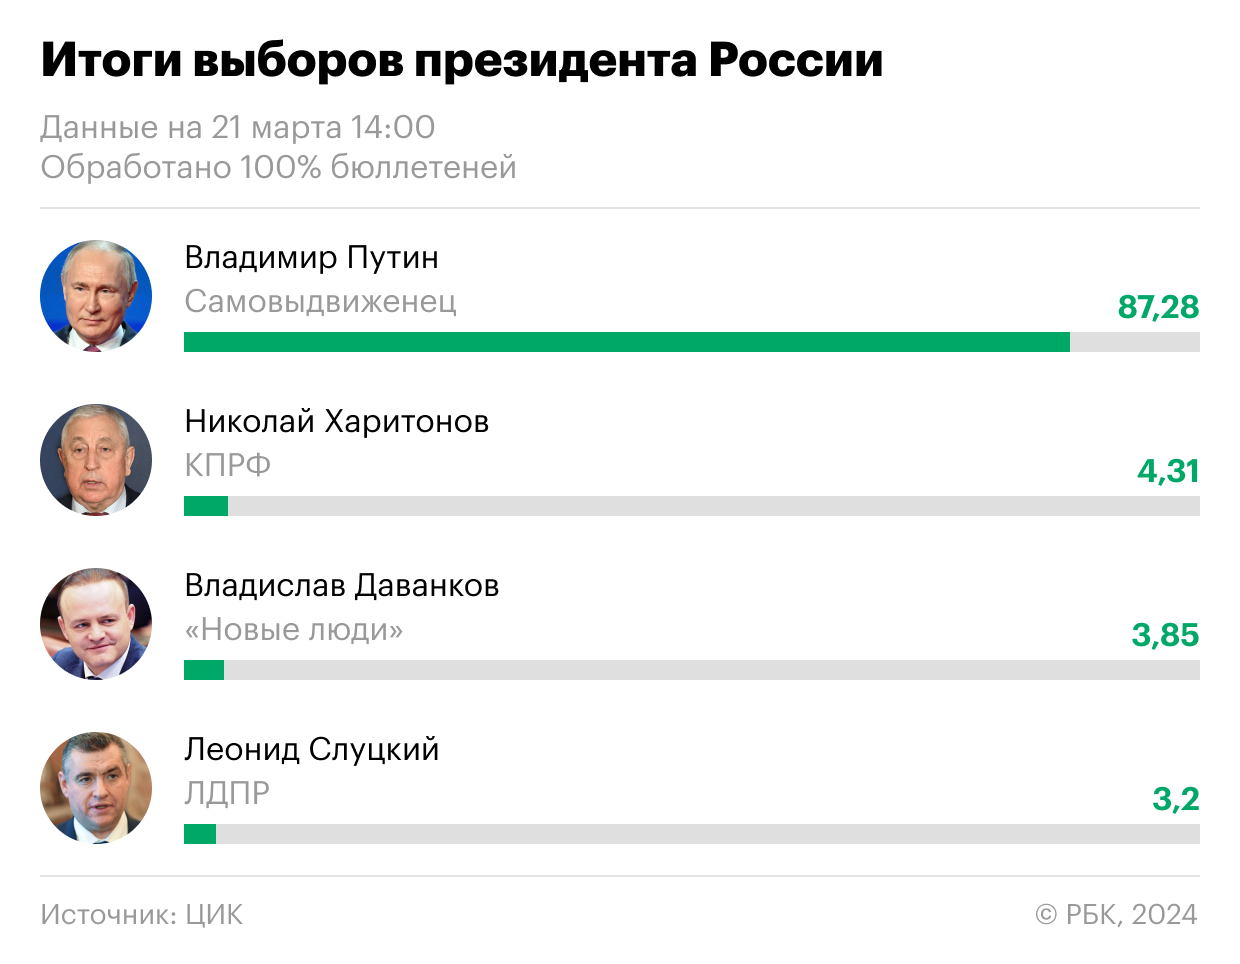 ЦИК подсчитала 100% протоколов на выборах президента России